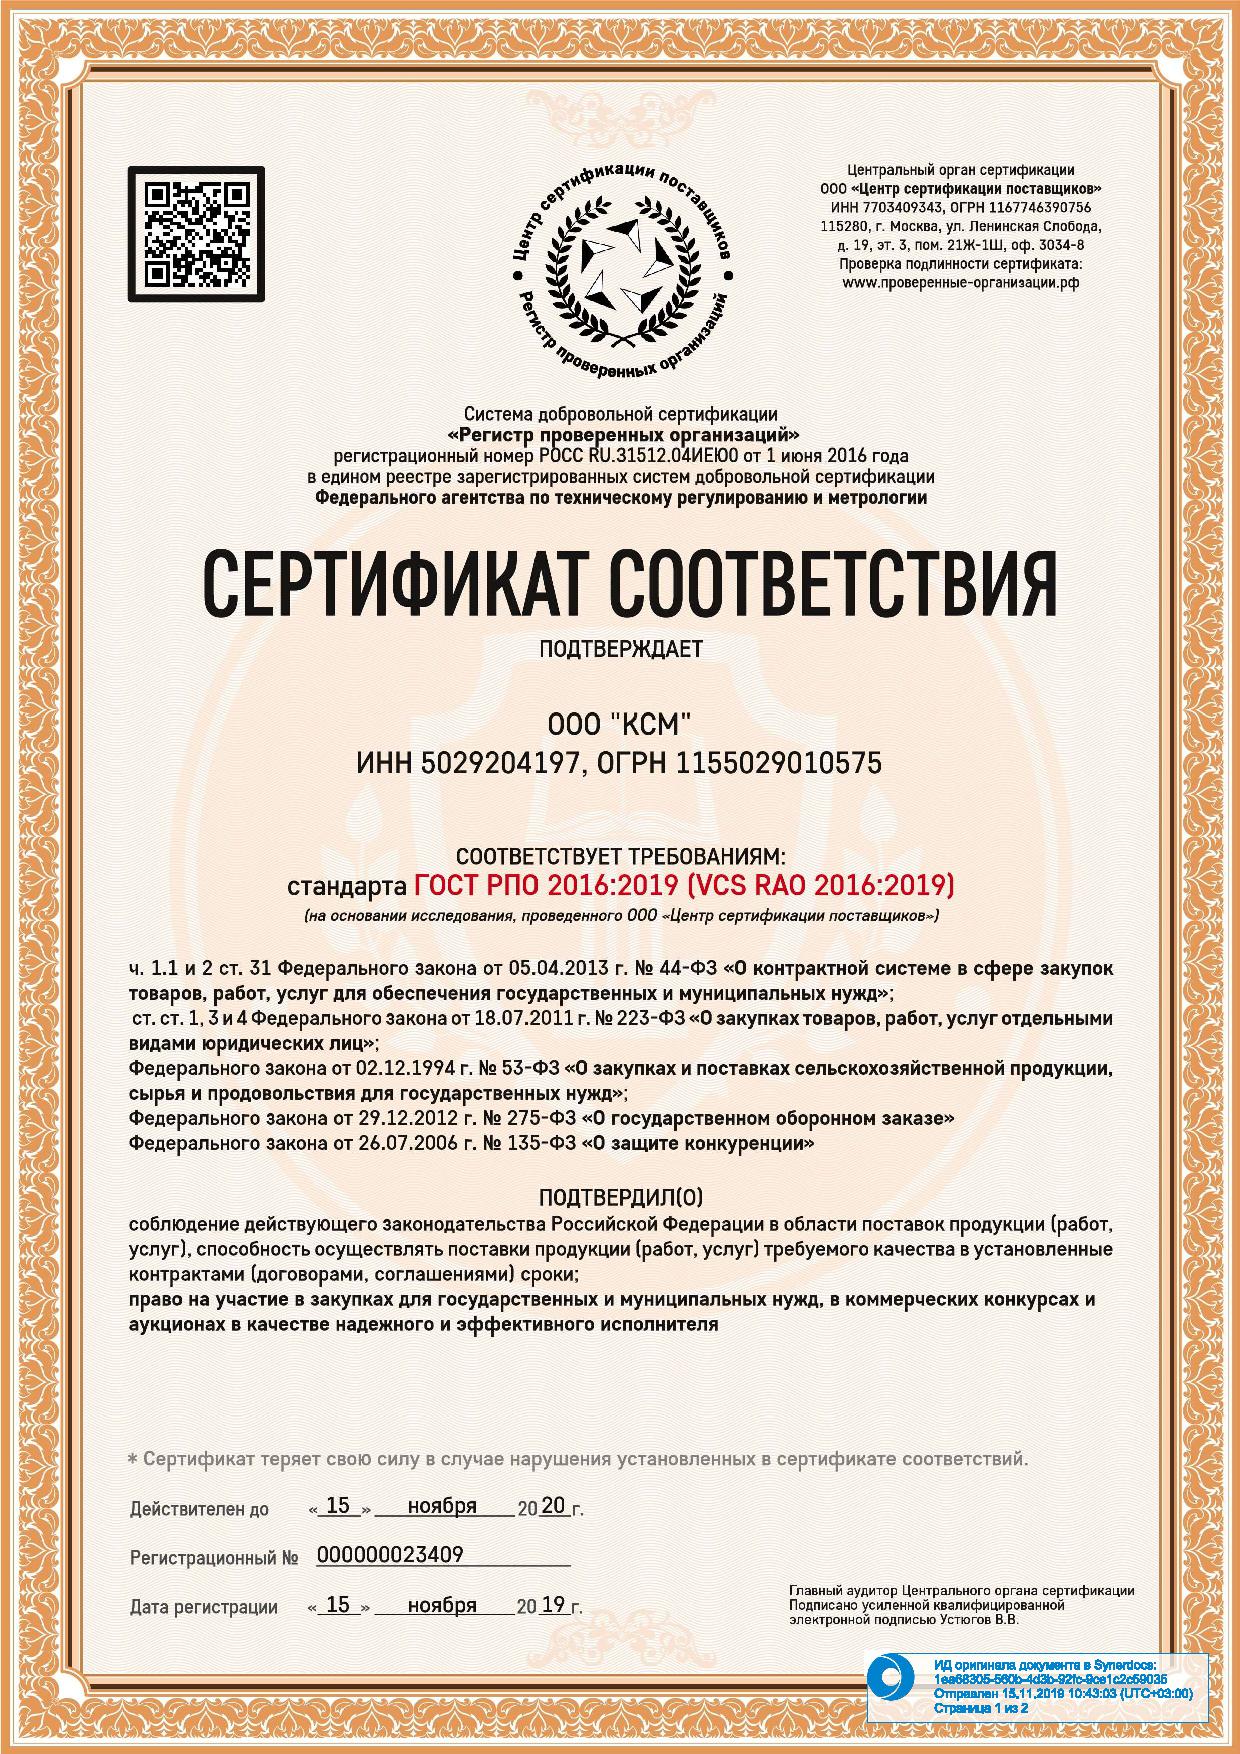 Сертификат соответствия ГОСТ РПО 2016:2019 стр.1